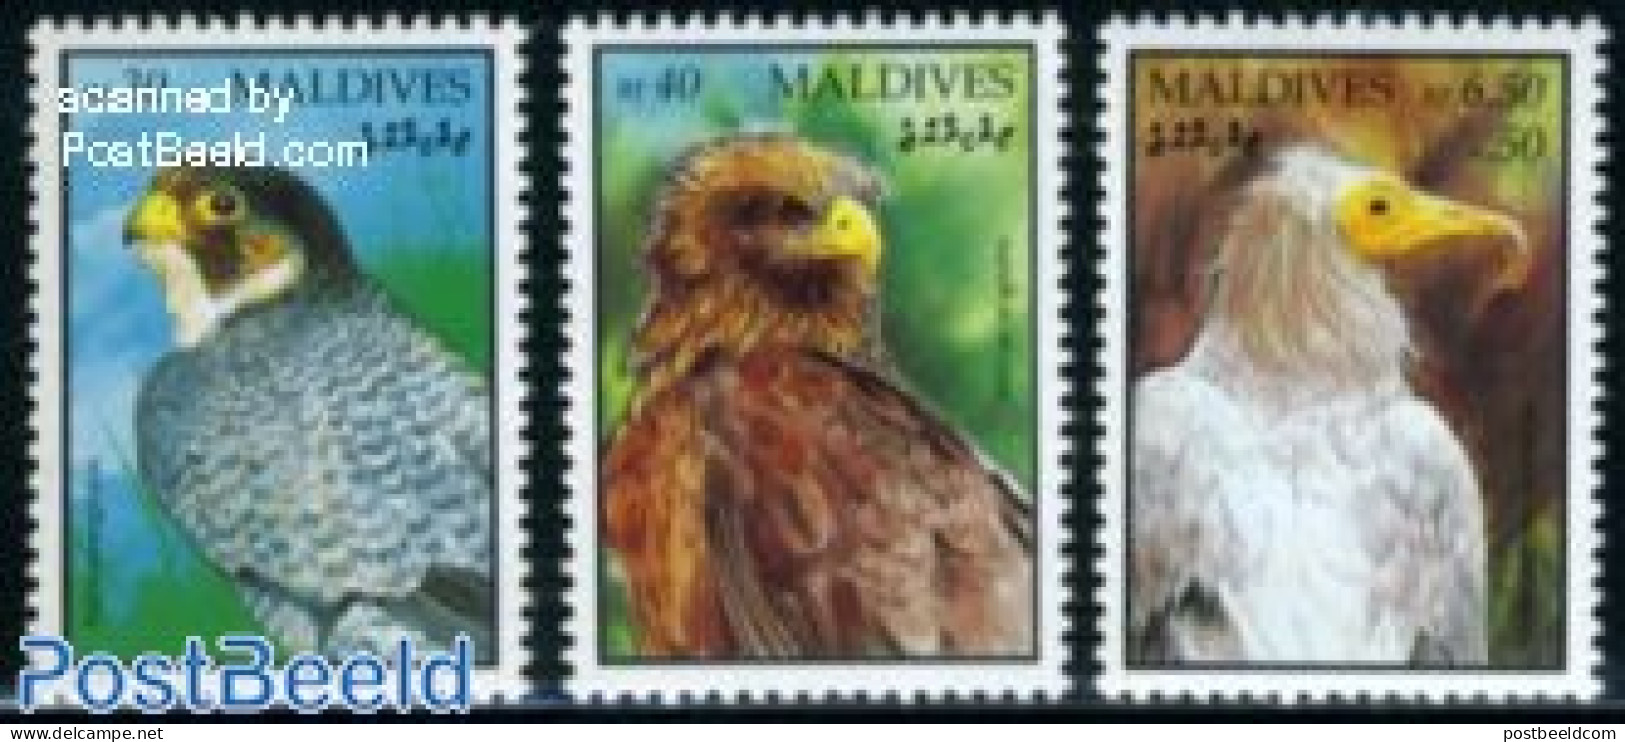 Maldives 1994 Definitives, Birds 3v, Mint NH, Nature - Birds - Birds Of Prey - Maldivas (1965-...)